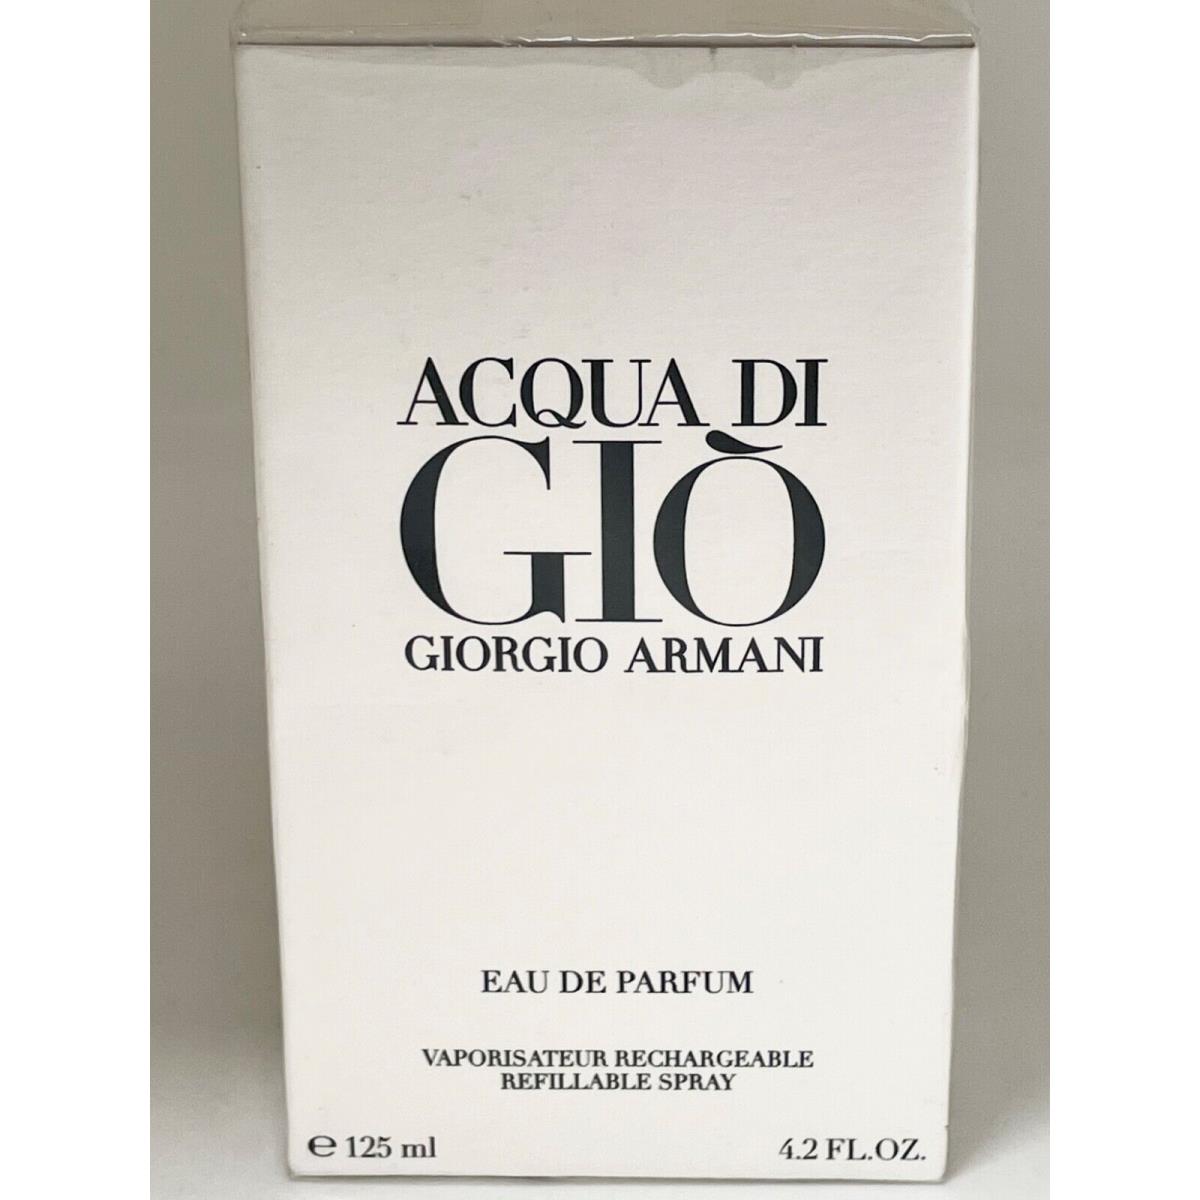 Acqua di Gio Giorgio Armani Eau de Parfum 4.2 Oz 125 mL Mens Perfume Spray